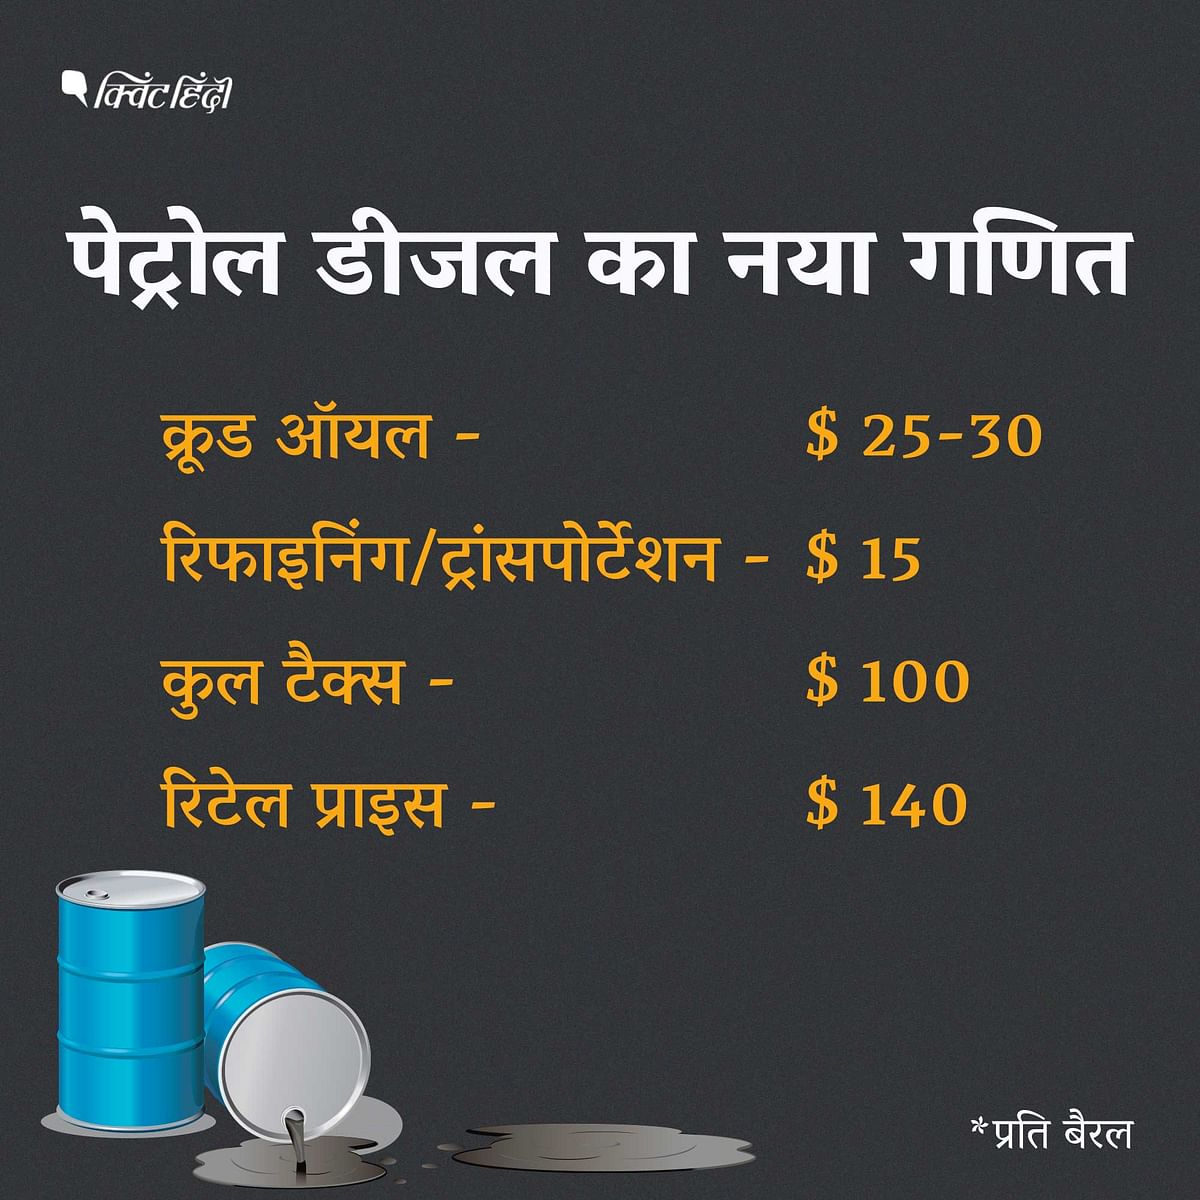 जिस पेट्रोल-डीजल की कीमत अभी 18-20 रुपये है, सरकार का उसके ऊपर करीब 50 रुपये का टैक्स लगेगा,